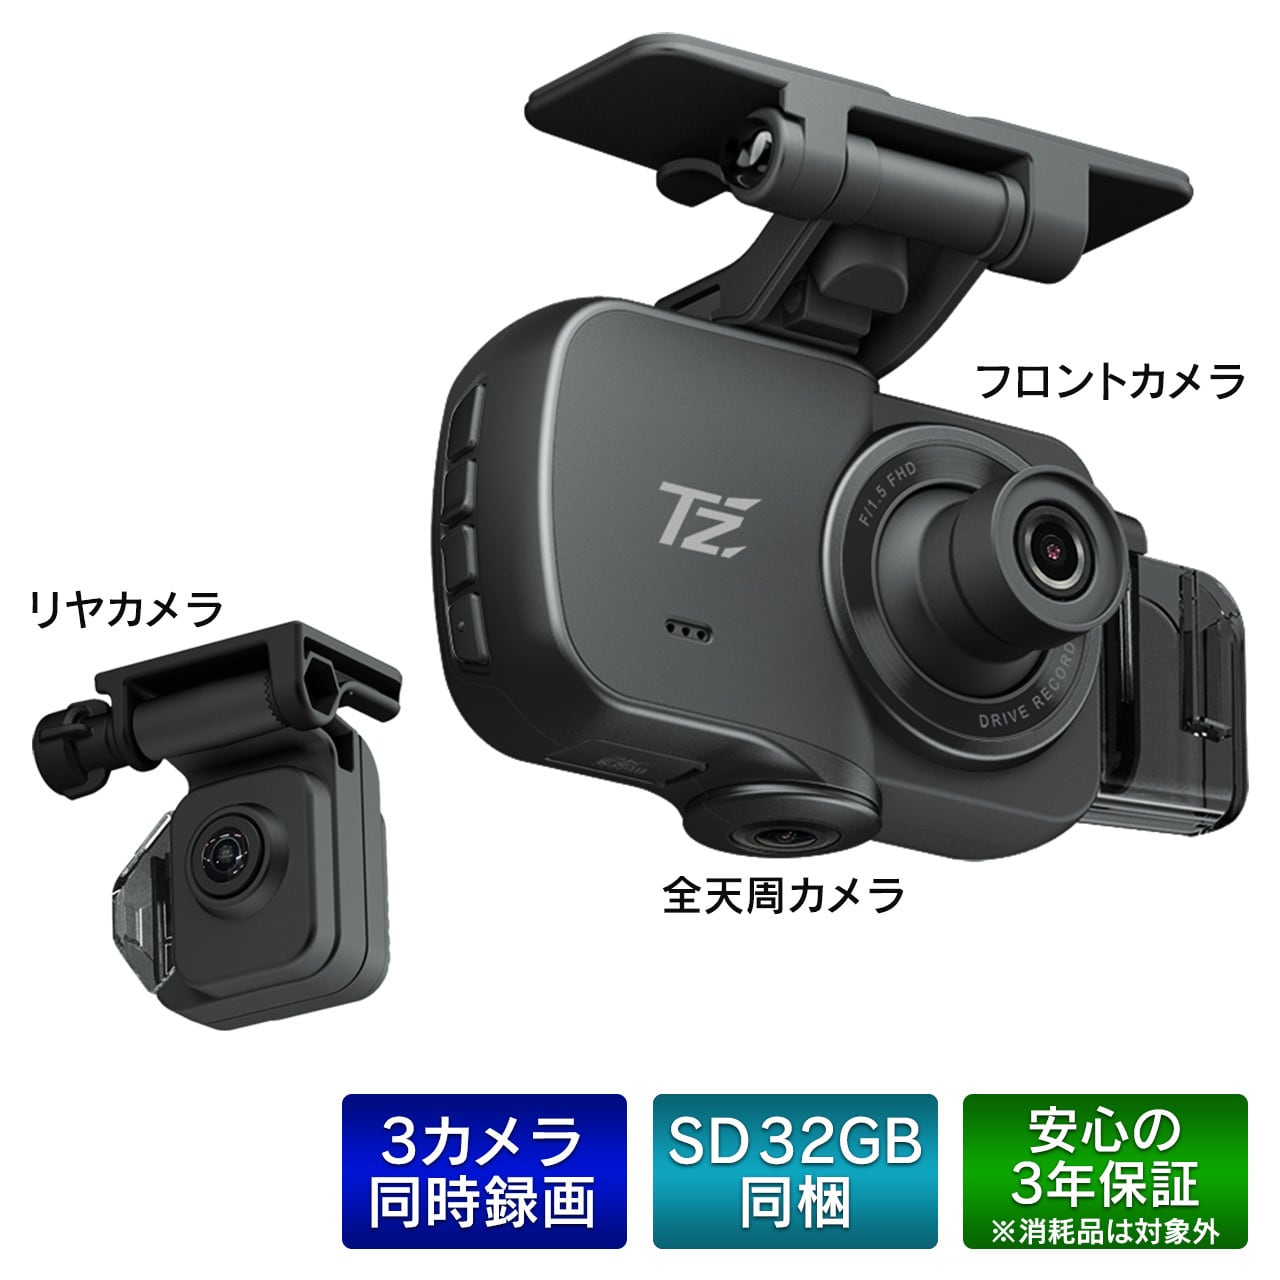 【未使用】トヨタTZ カーメイト TZ-DR300 360℃カメラ＋リヤドラレコ